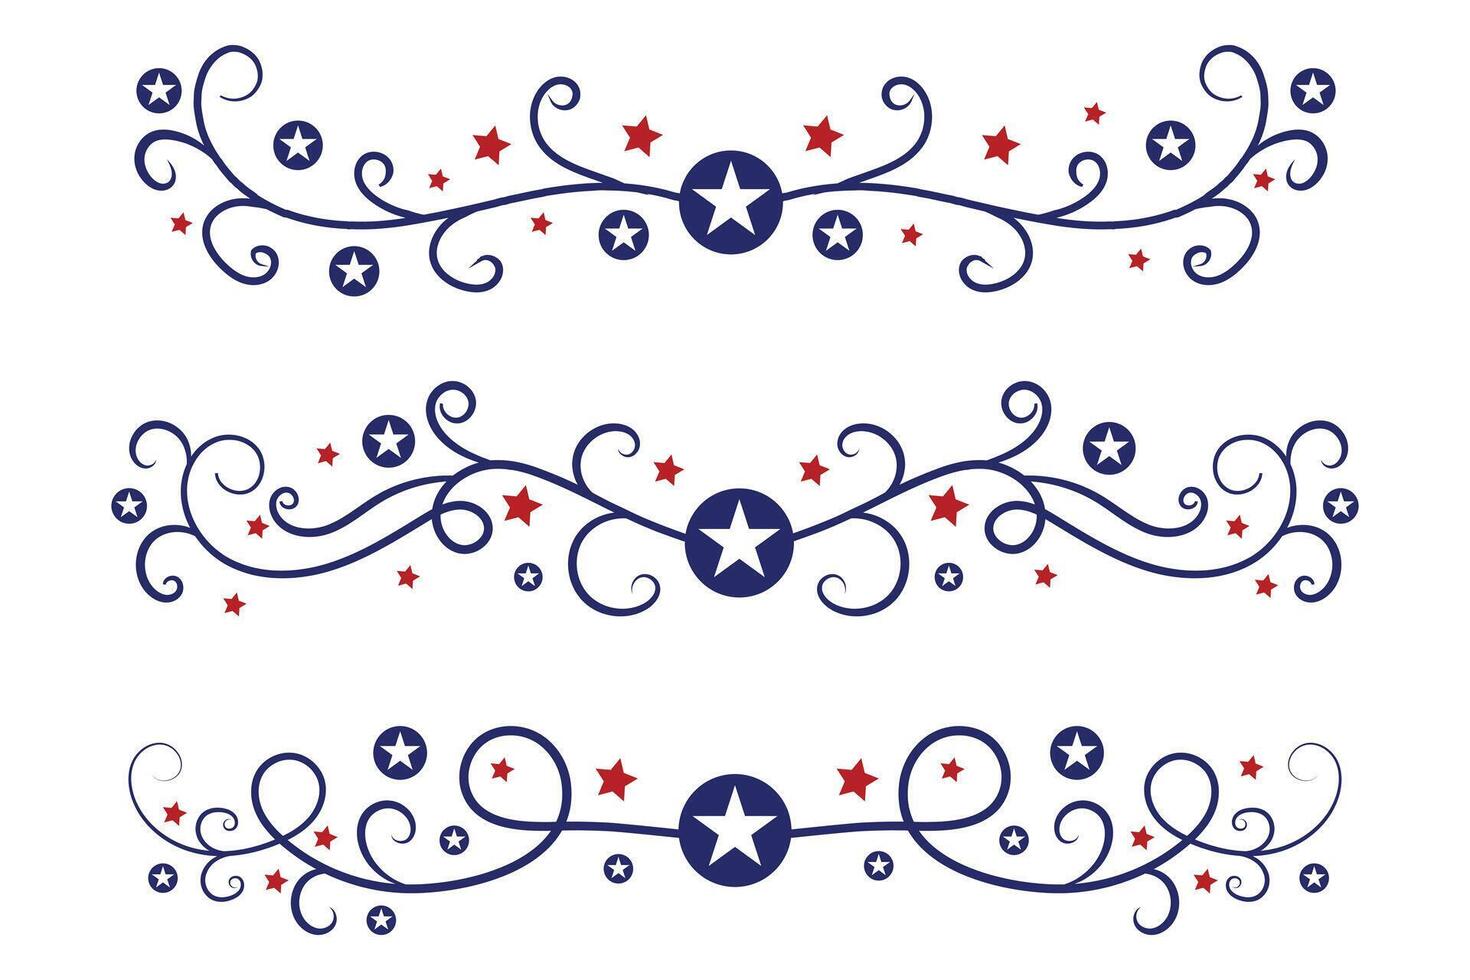 4 ° di luglio lettering intestazione ornato vortici, patriottico rosso stelle, e blu elegante fantasia separatori decorativo elementi, americano indipendenza giorno calligrafia fiorisce testo divisori vettore